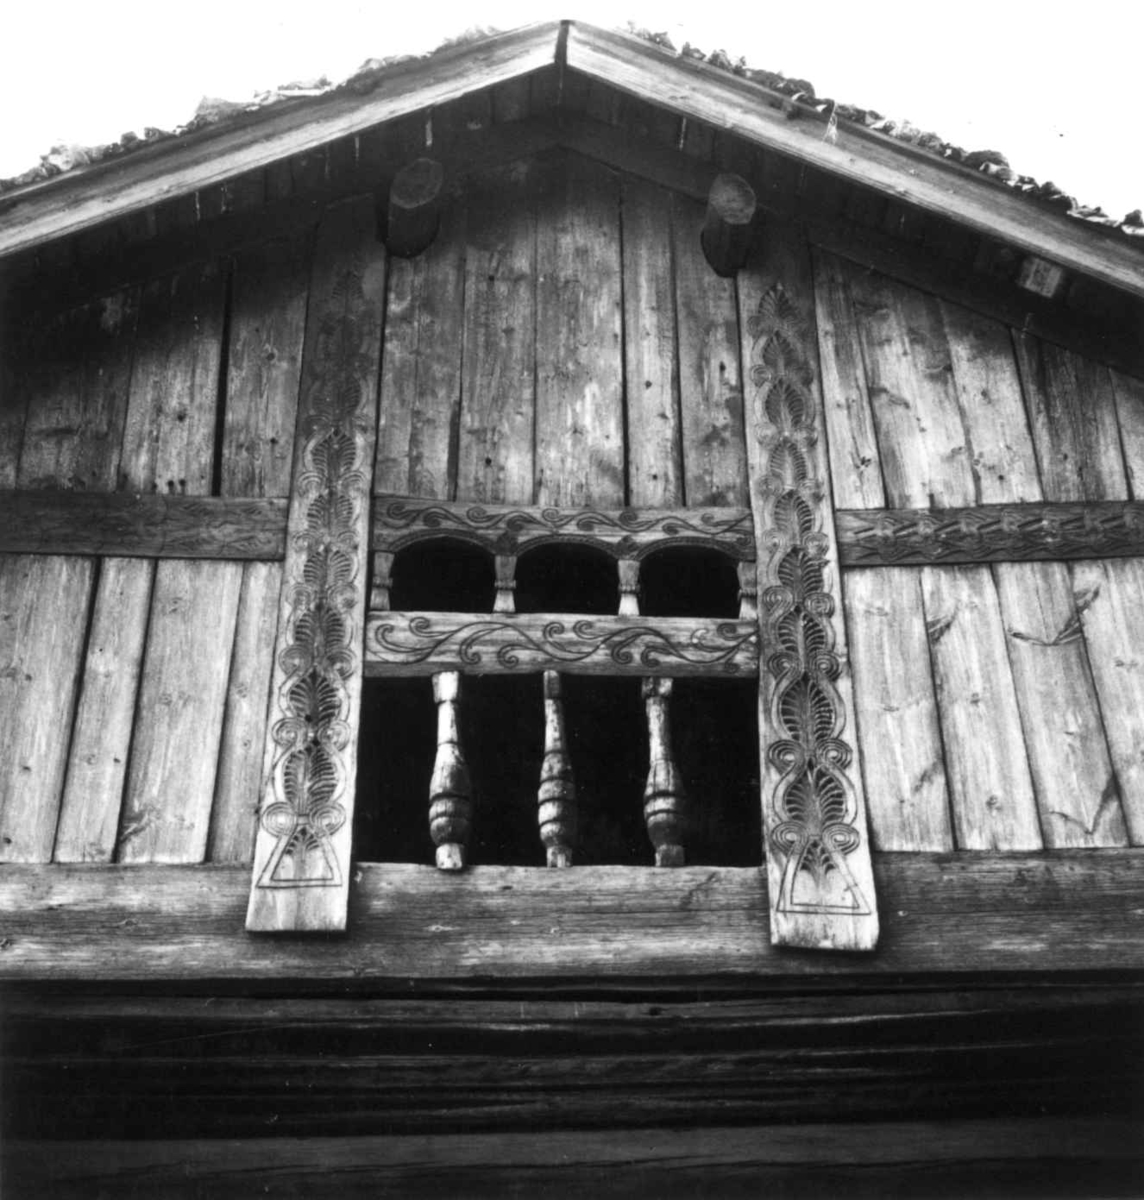 Oseloftet fra Bygland i Setesdal. Detaljer fra svalen.
Fotografert av Bergljot Sinding (NF) våren 1972, for Ellen Marie Magerøy, til hennes bok om treskurd.